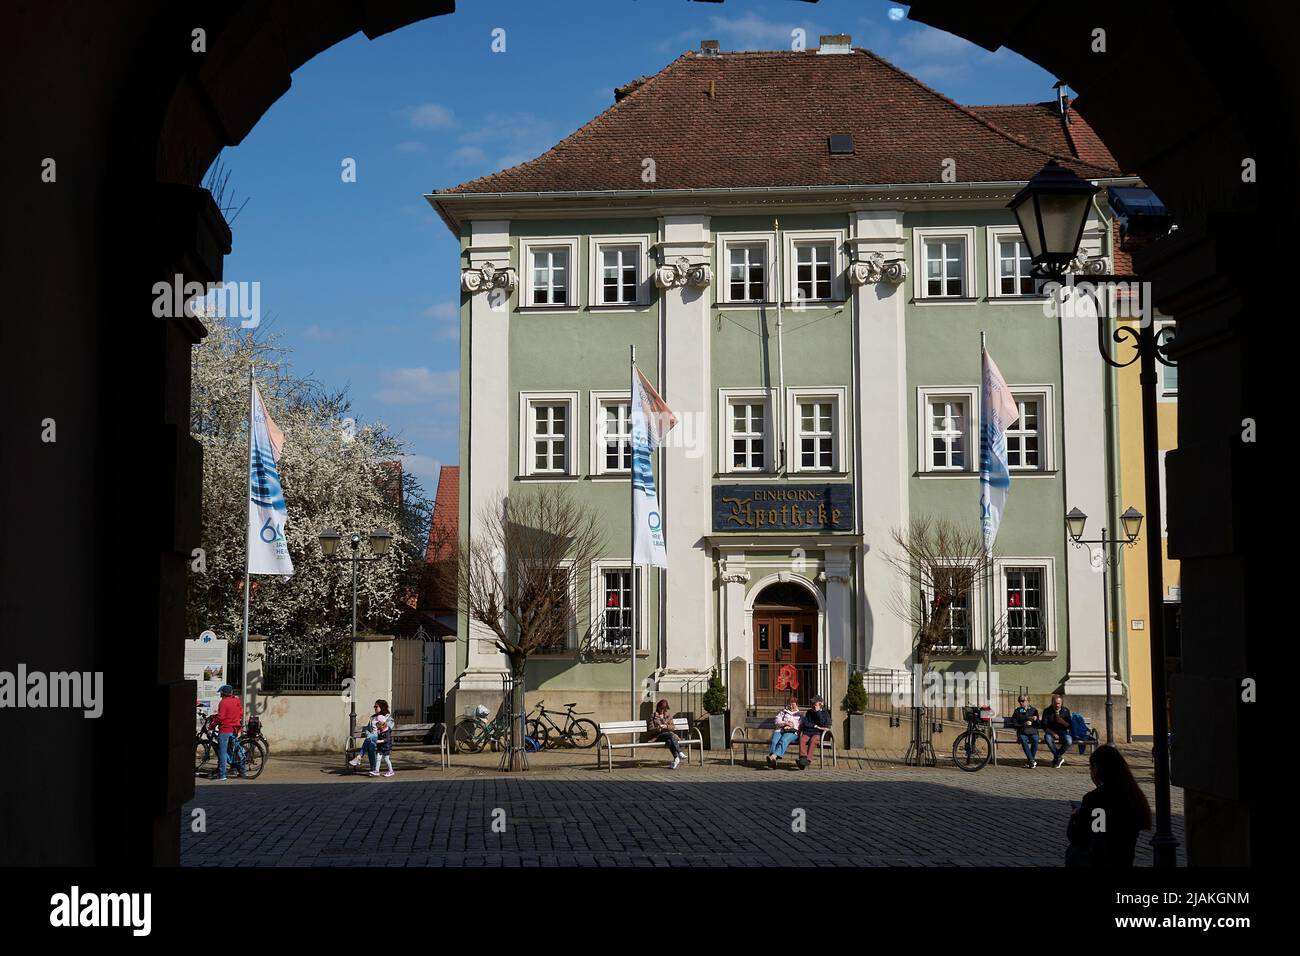 Apotheke, Marktplatz, Blick durch den Torbogen von dem Rathaus, Bad Windsheim, Bayern, Deutschland Stock Photo